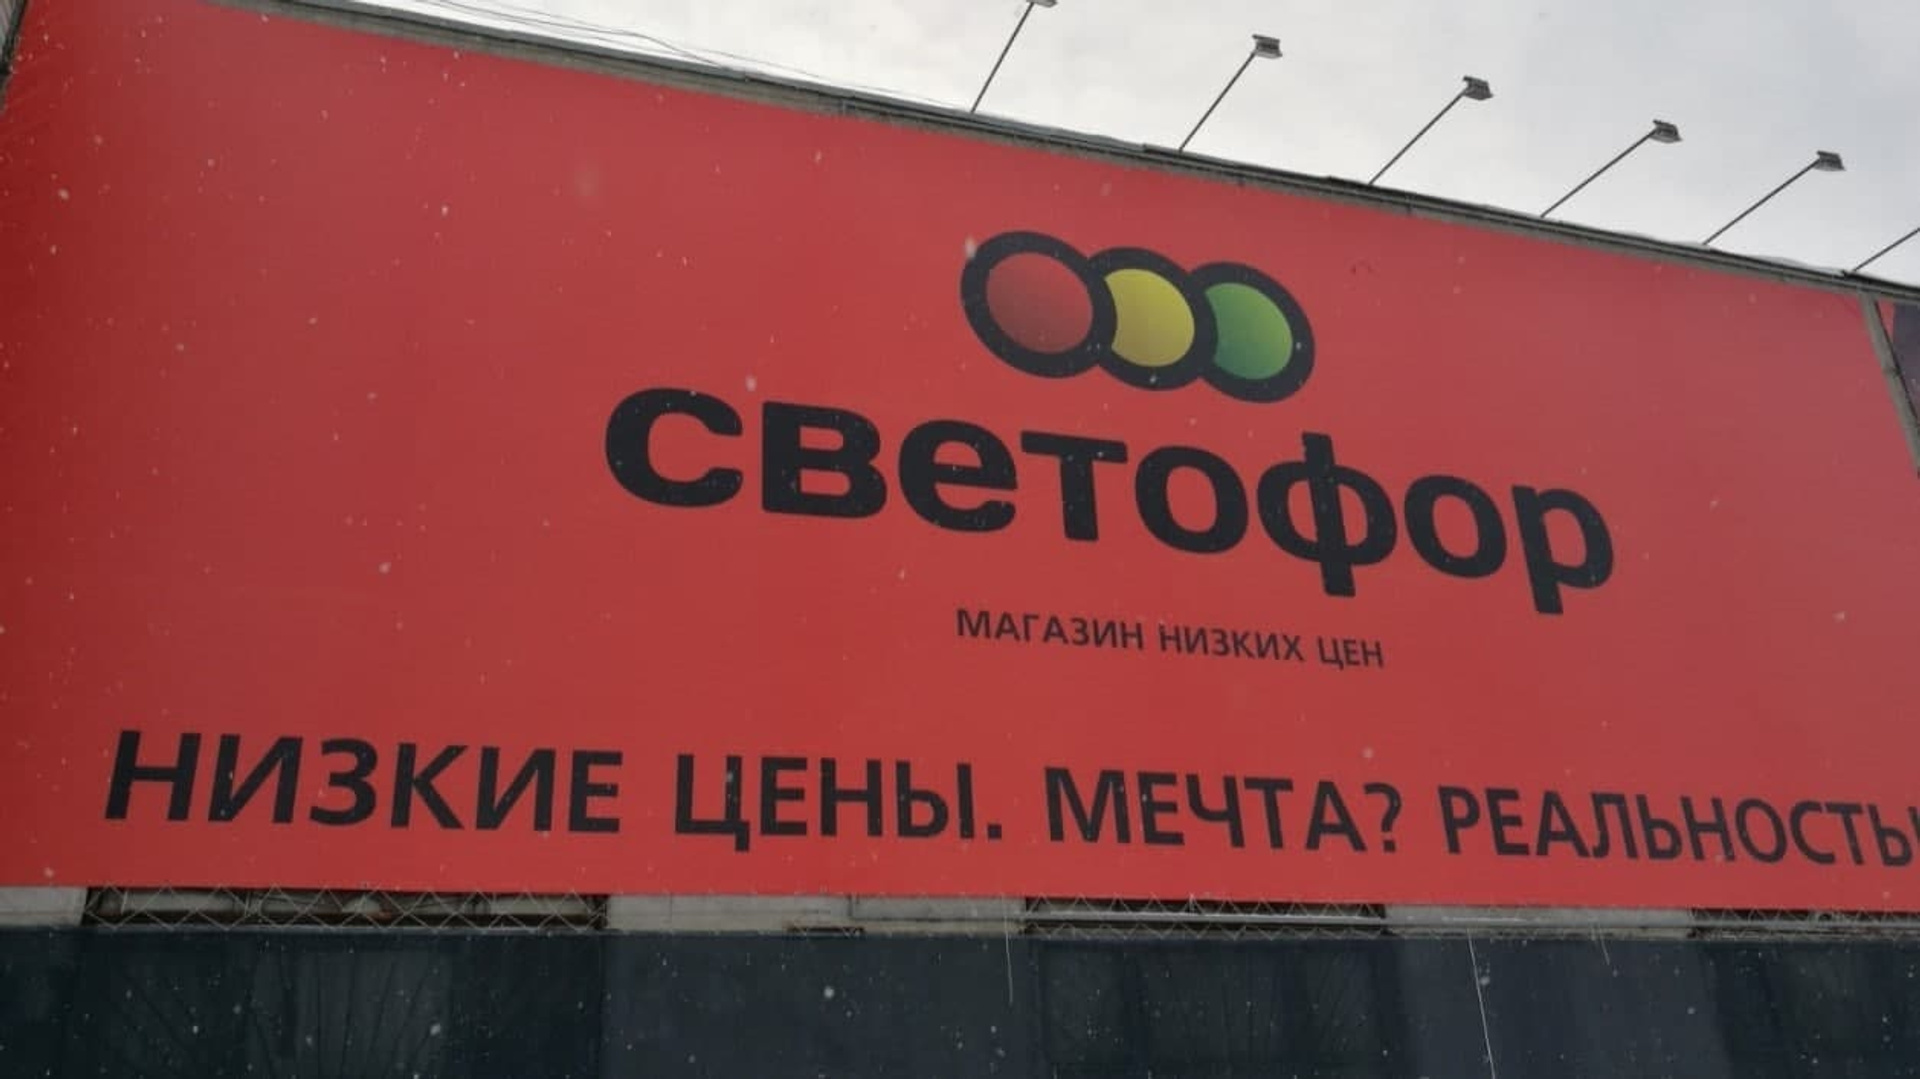 Богатейшая семья бизнесменов из Красноярска, создавшая «Светофор», откроет магазины в Словакии и расширит сеть в Сербии